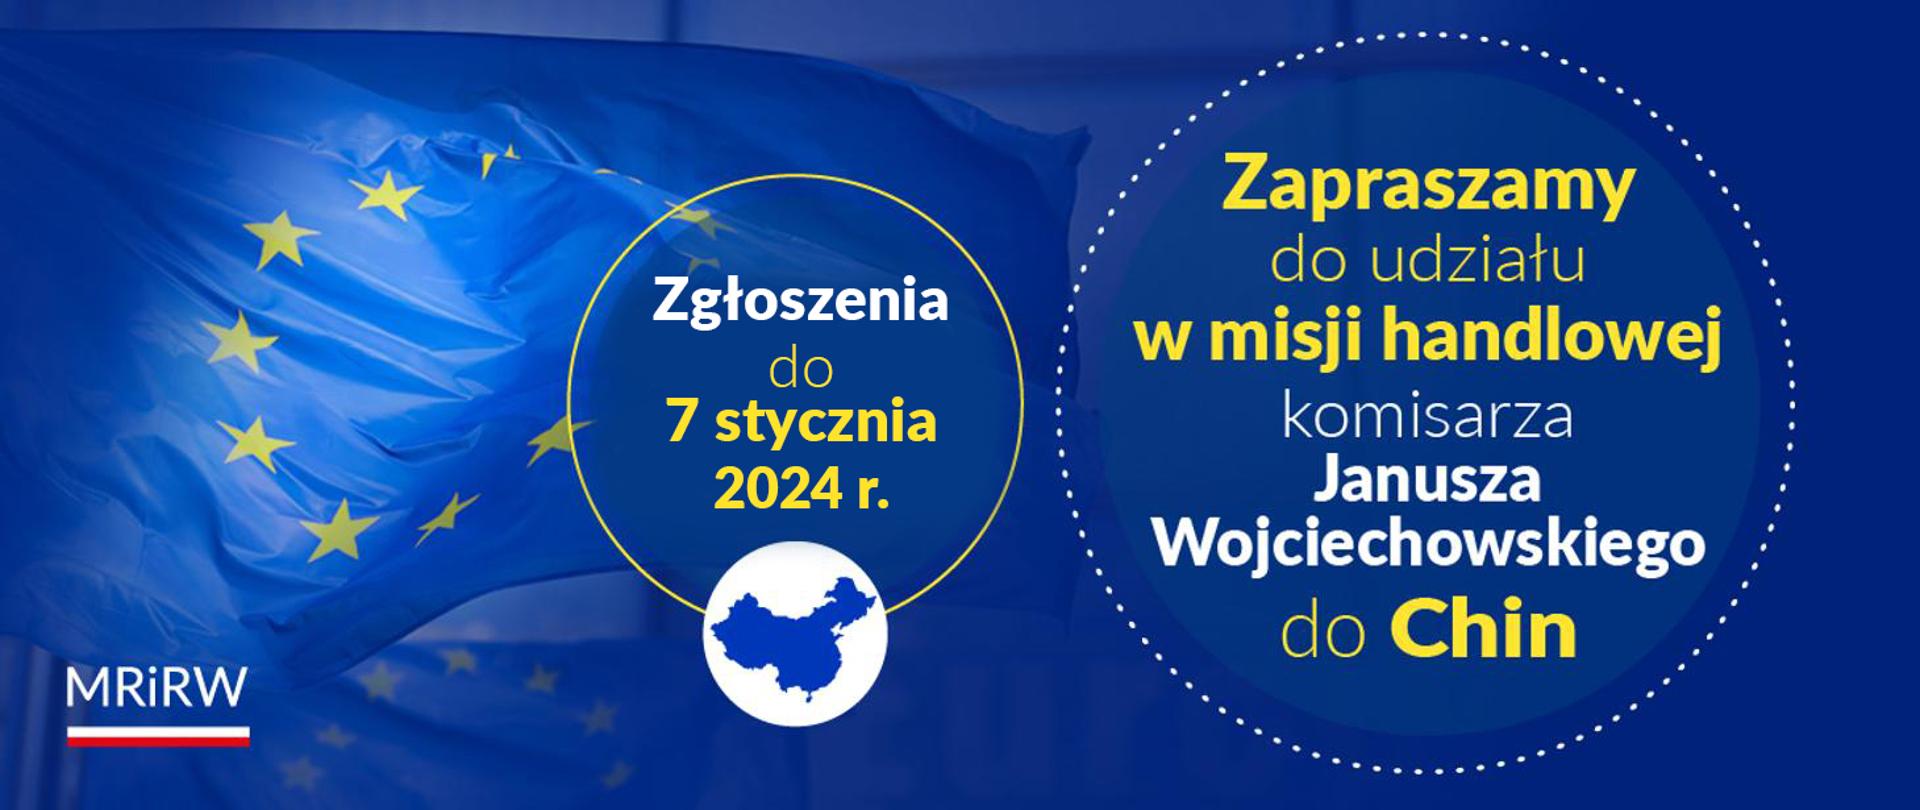 Grafika z tekstem "Zapraszamy do udziału w misji handlowej komisarza Janusza Wojciechowskiego do Chin. Zgłoszenia do 7 stycznia 2024 r."